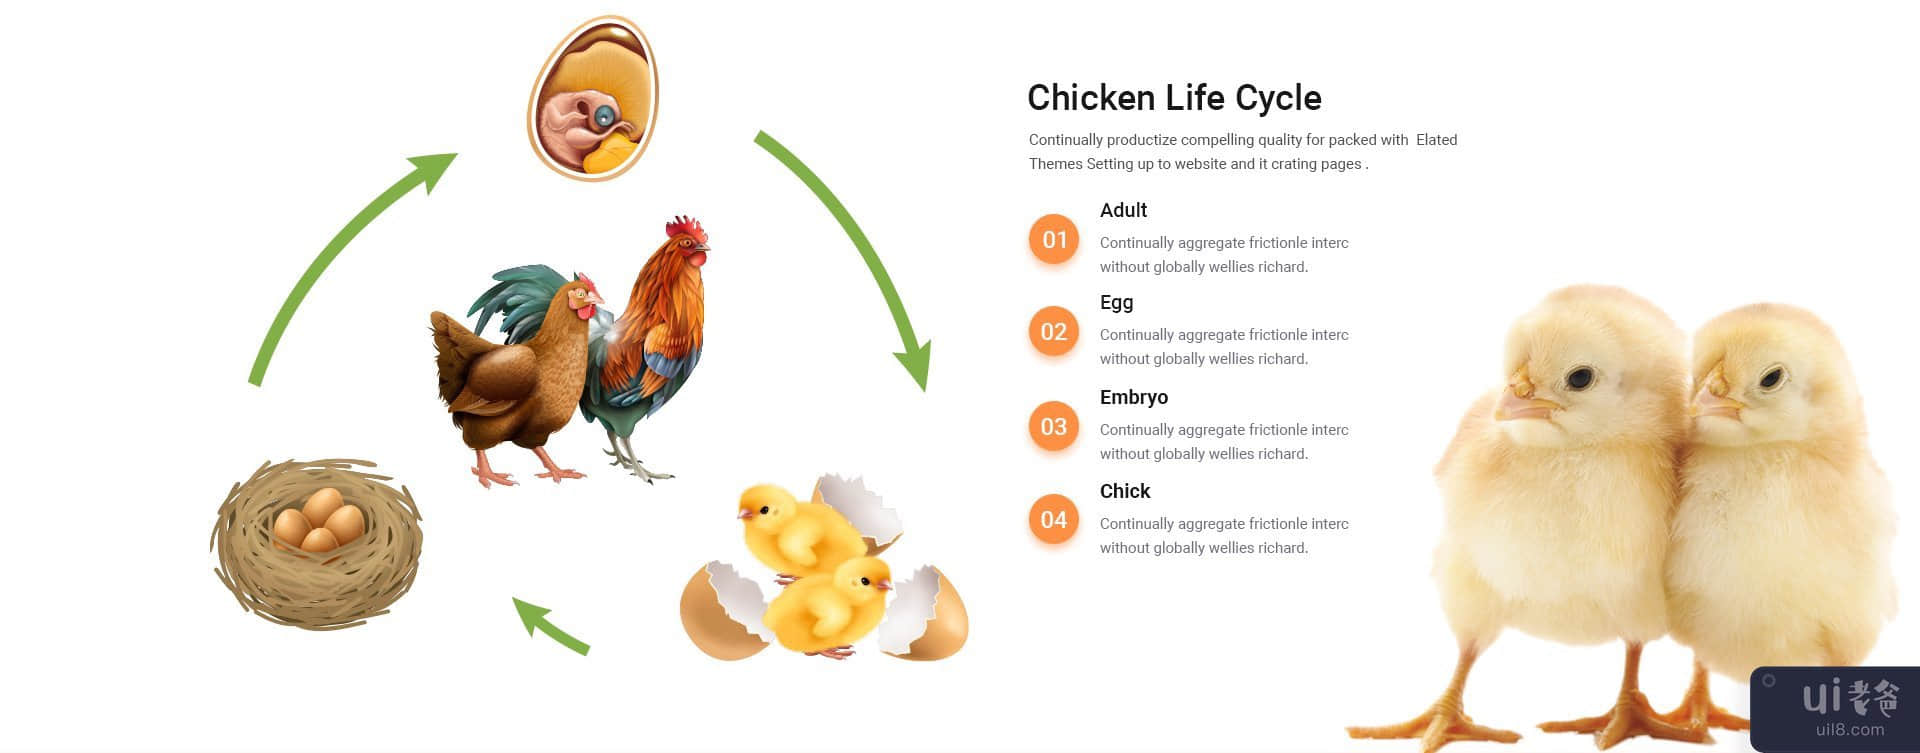 PoultryFarm - 有机家禽网页模板。(PoultryFarm - Organic Poultry Web Template.)插图